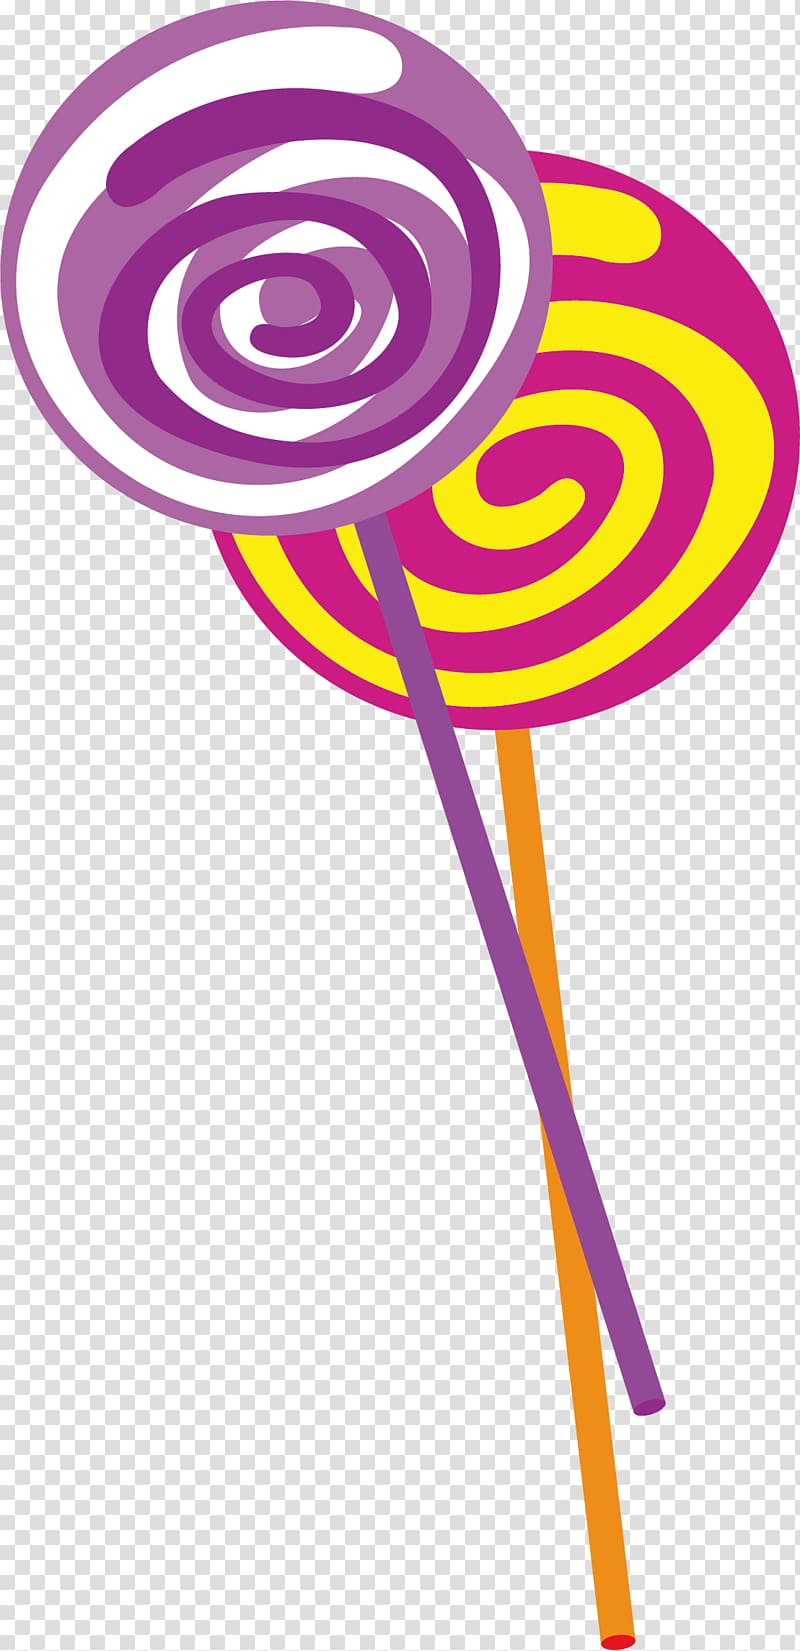 Lollipop , Lollipop element transparent background PNG clipart